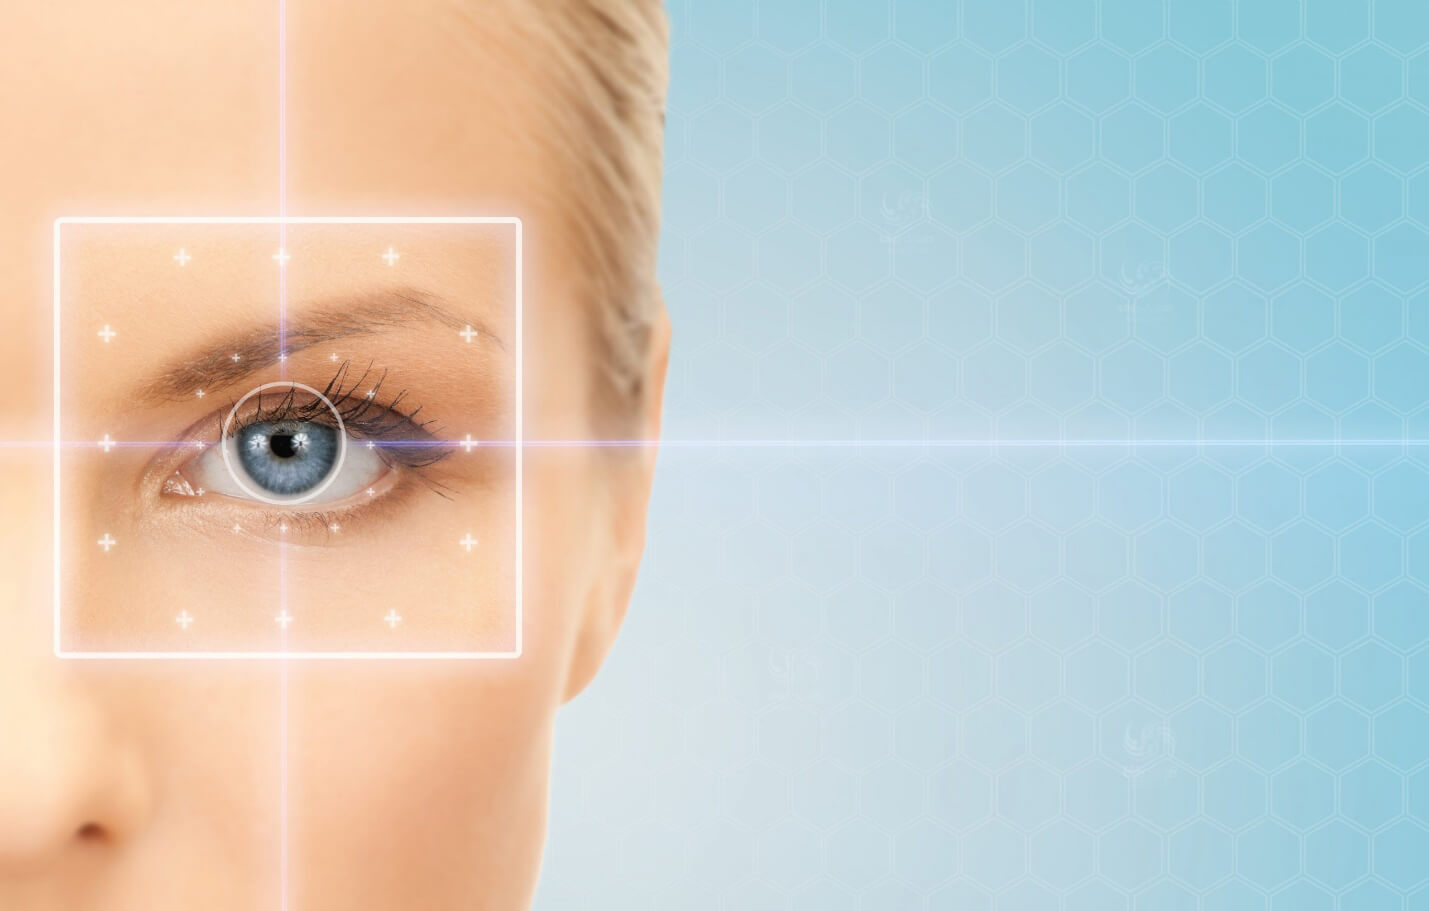 لیزیک چشم باید قبل از جراحی رینوپلاستی انجام داد یا بعد از آن ؟